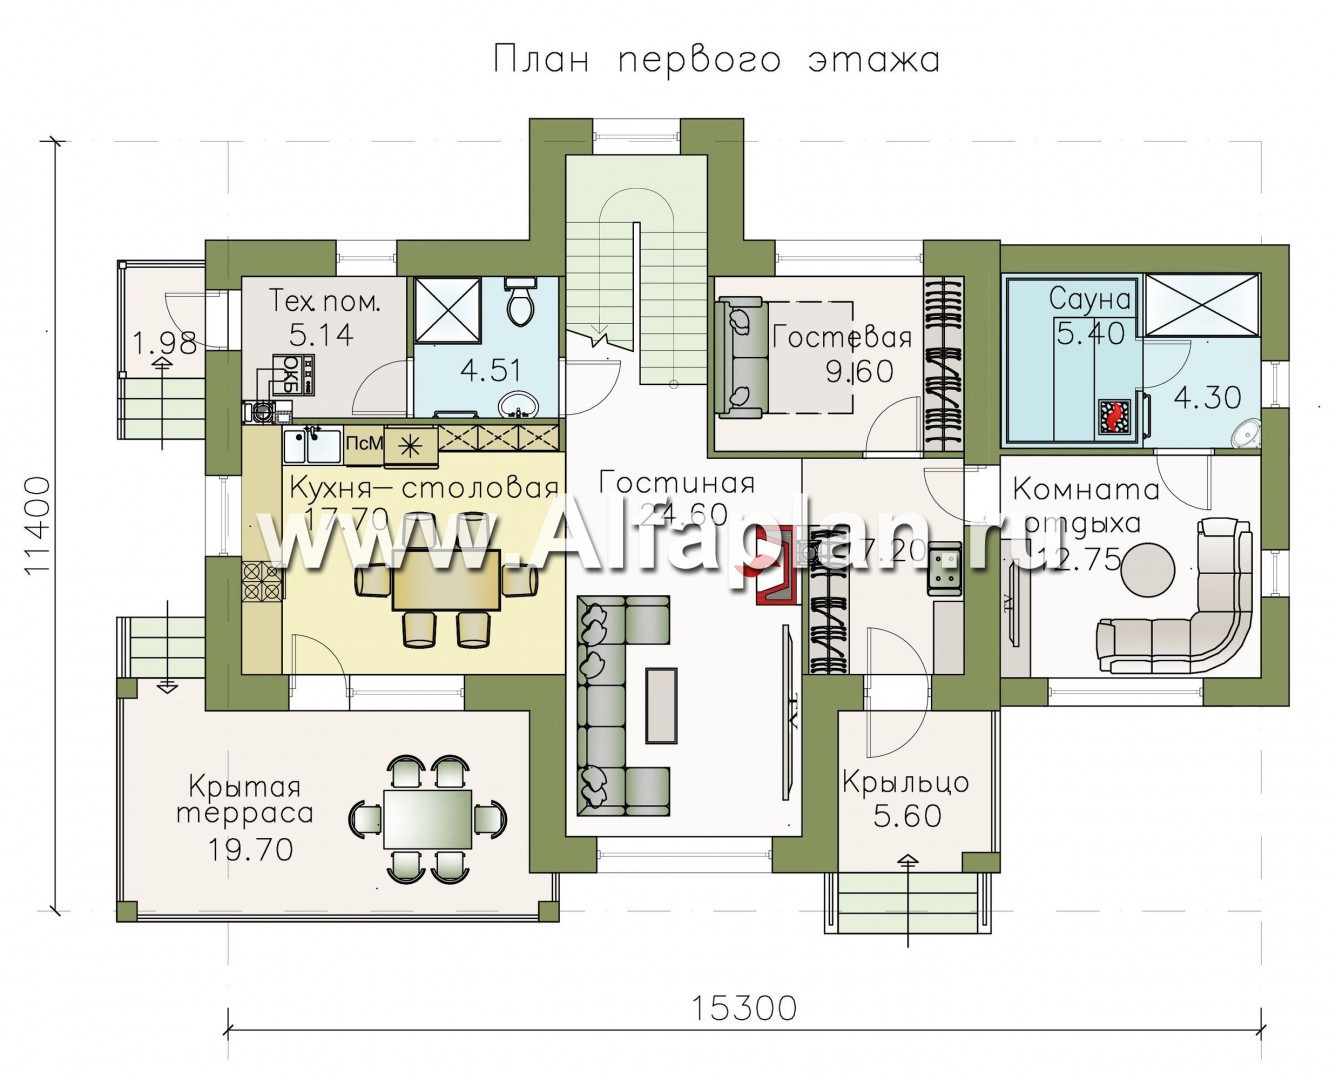 Изображение плана проекта «Саар»- проект двухэтажного дома, с террасой, с гостевой на 1 этаже, в стиле Райта, с сауной в пристройке №1